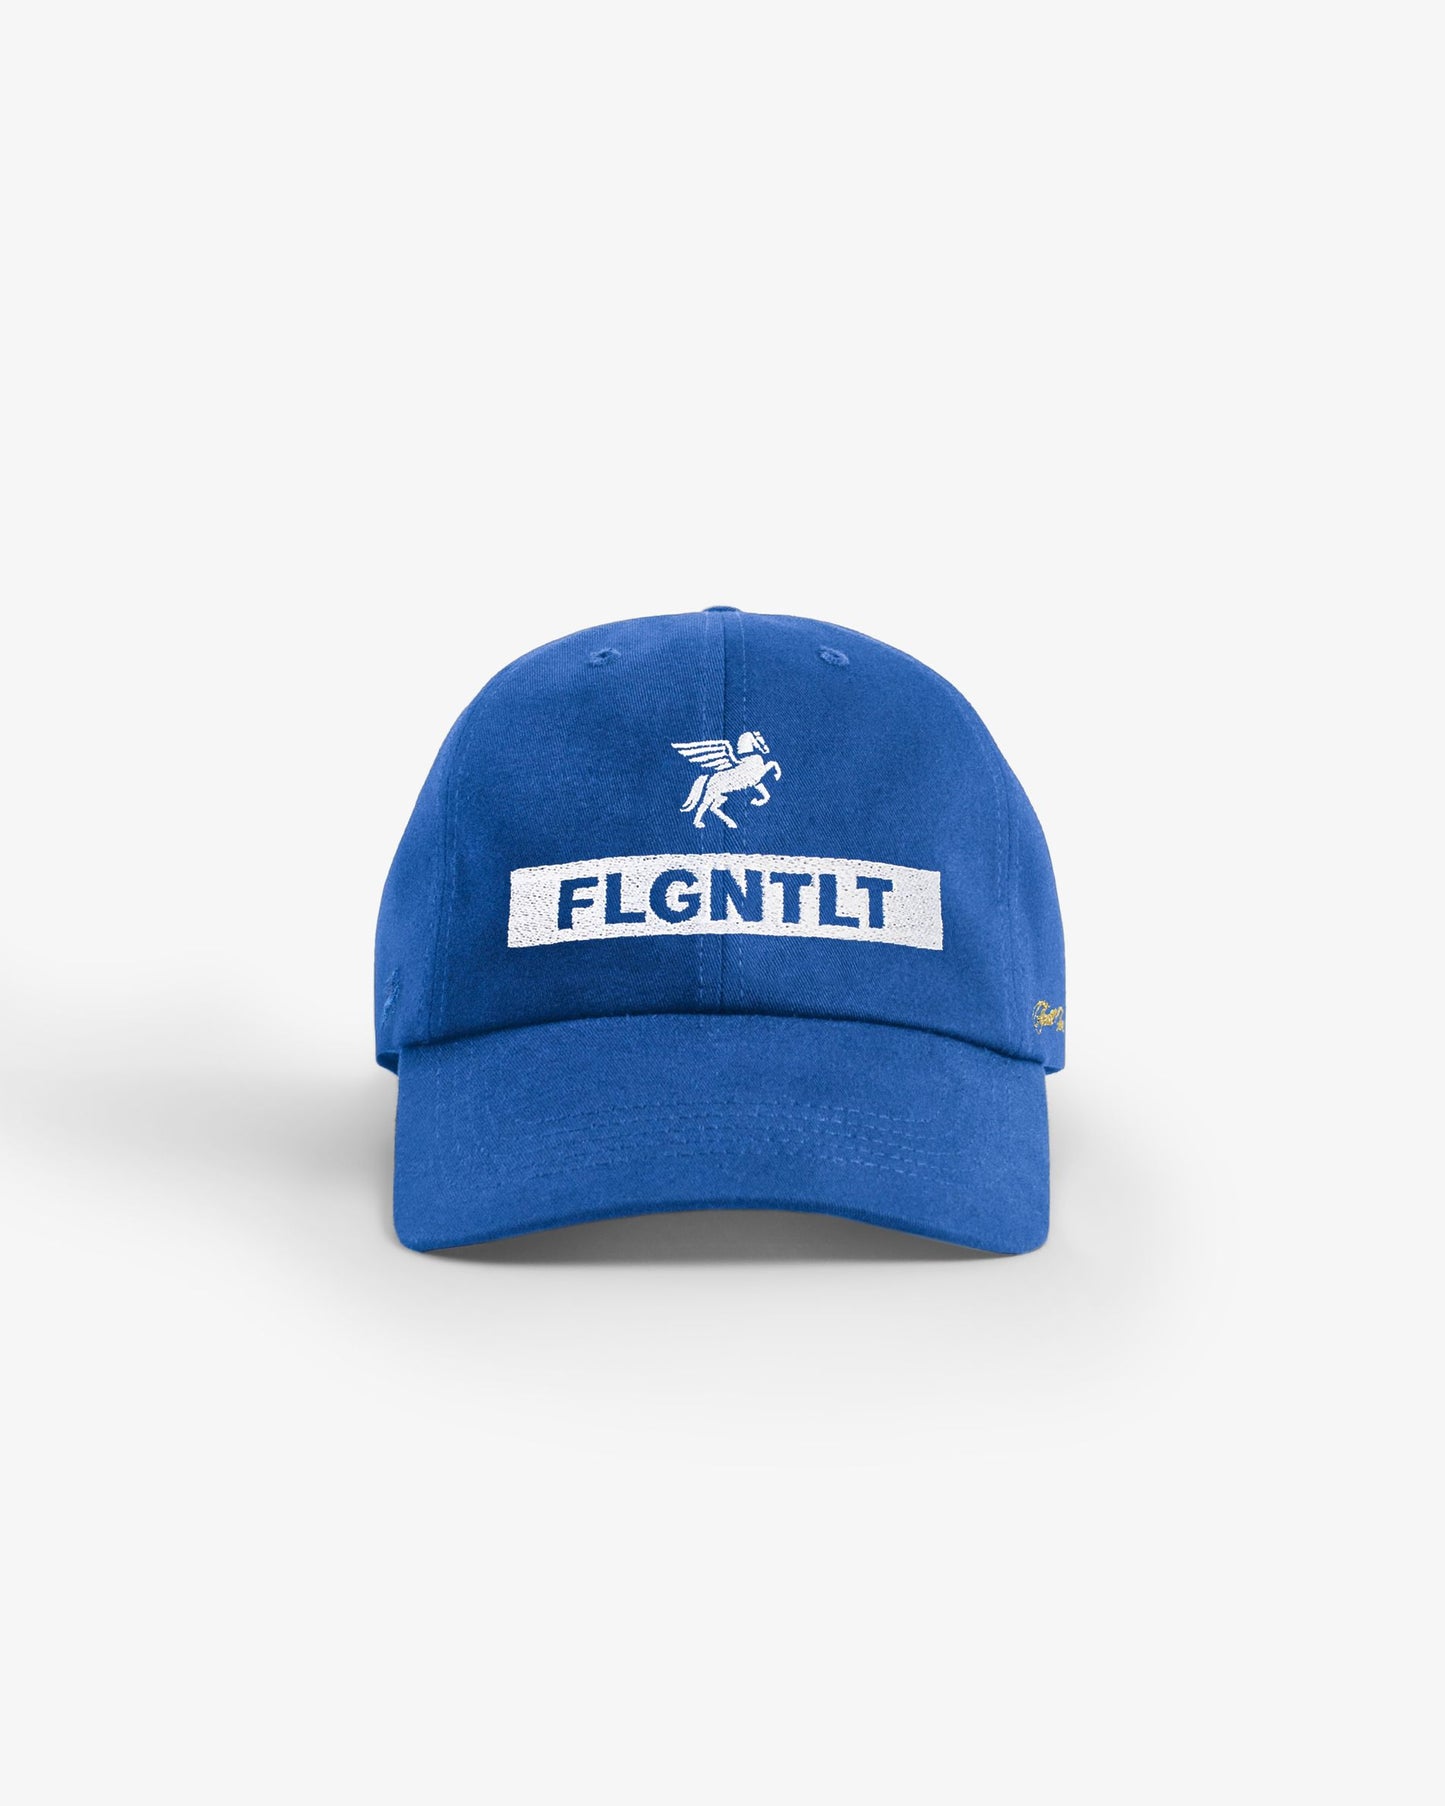 FLGNTLT NACIONAL CAP